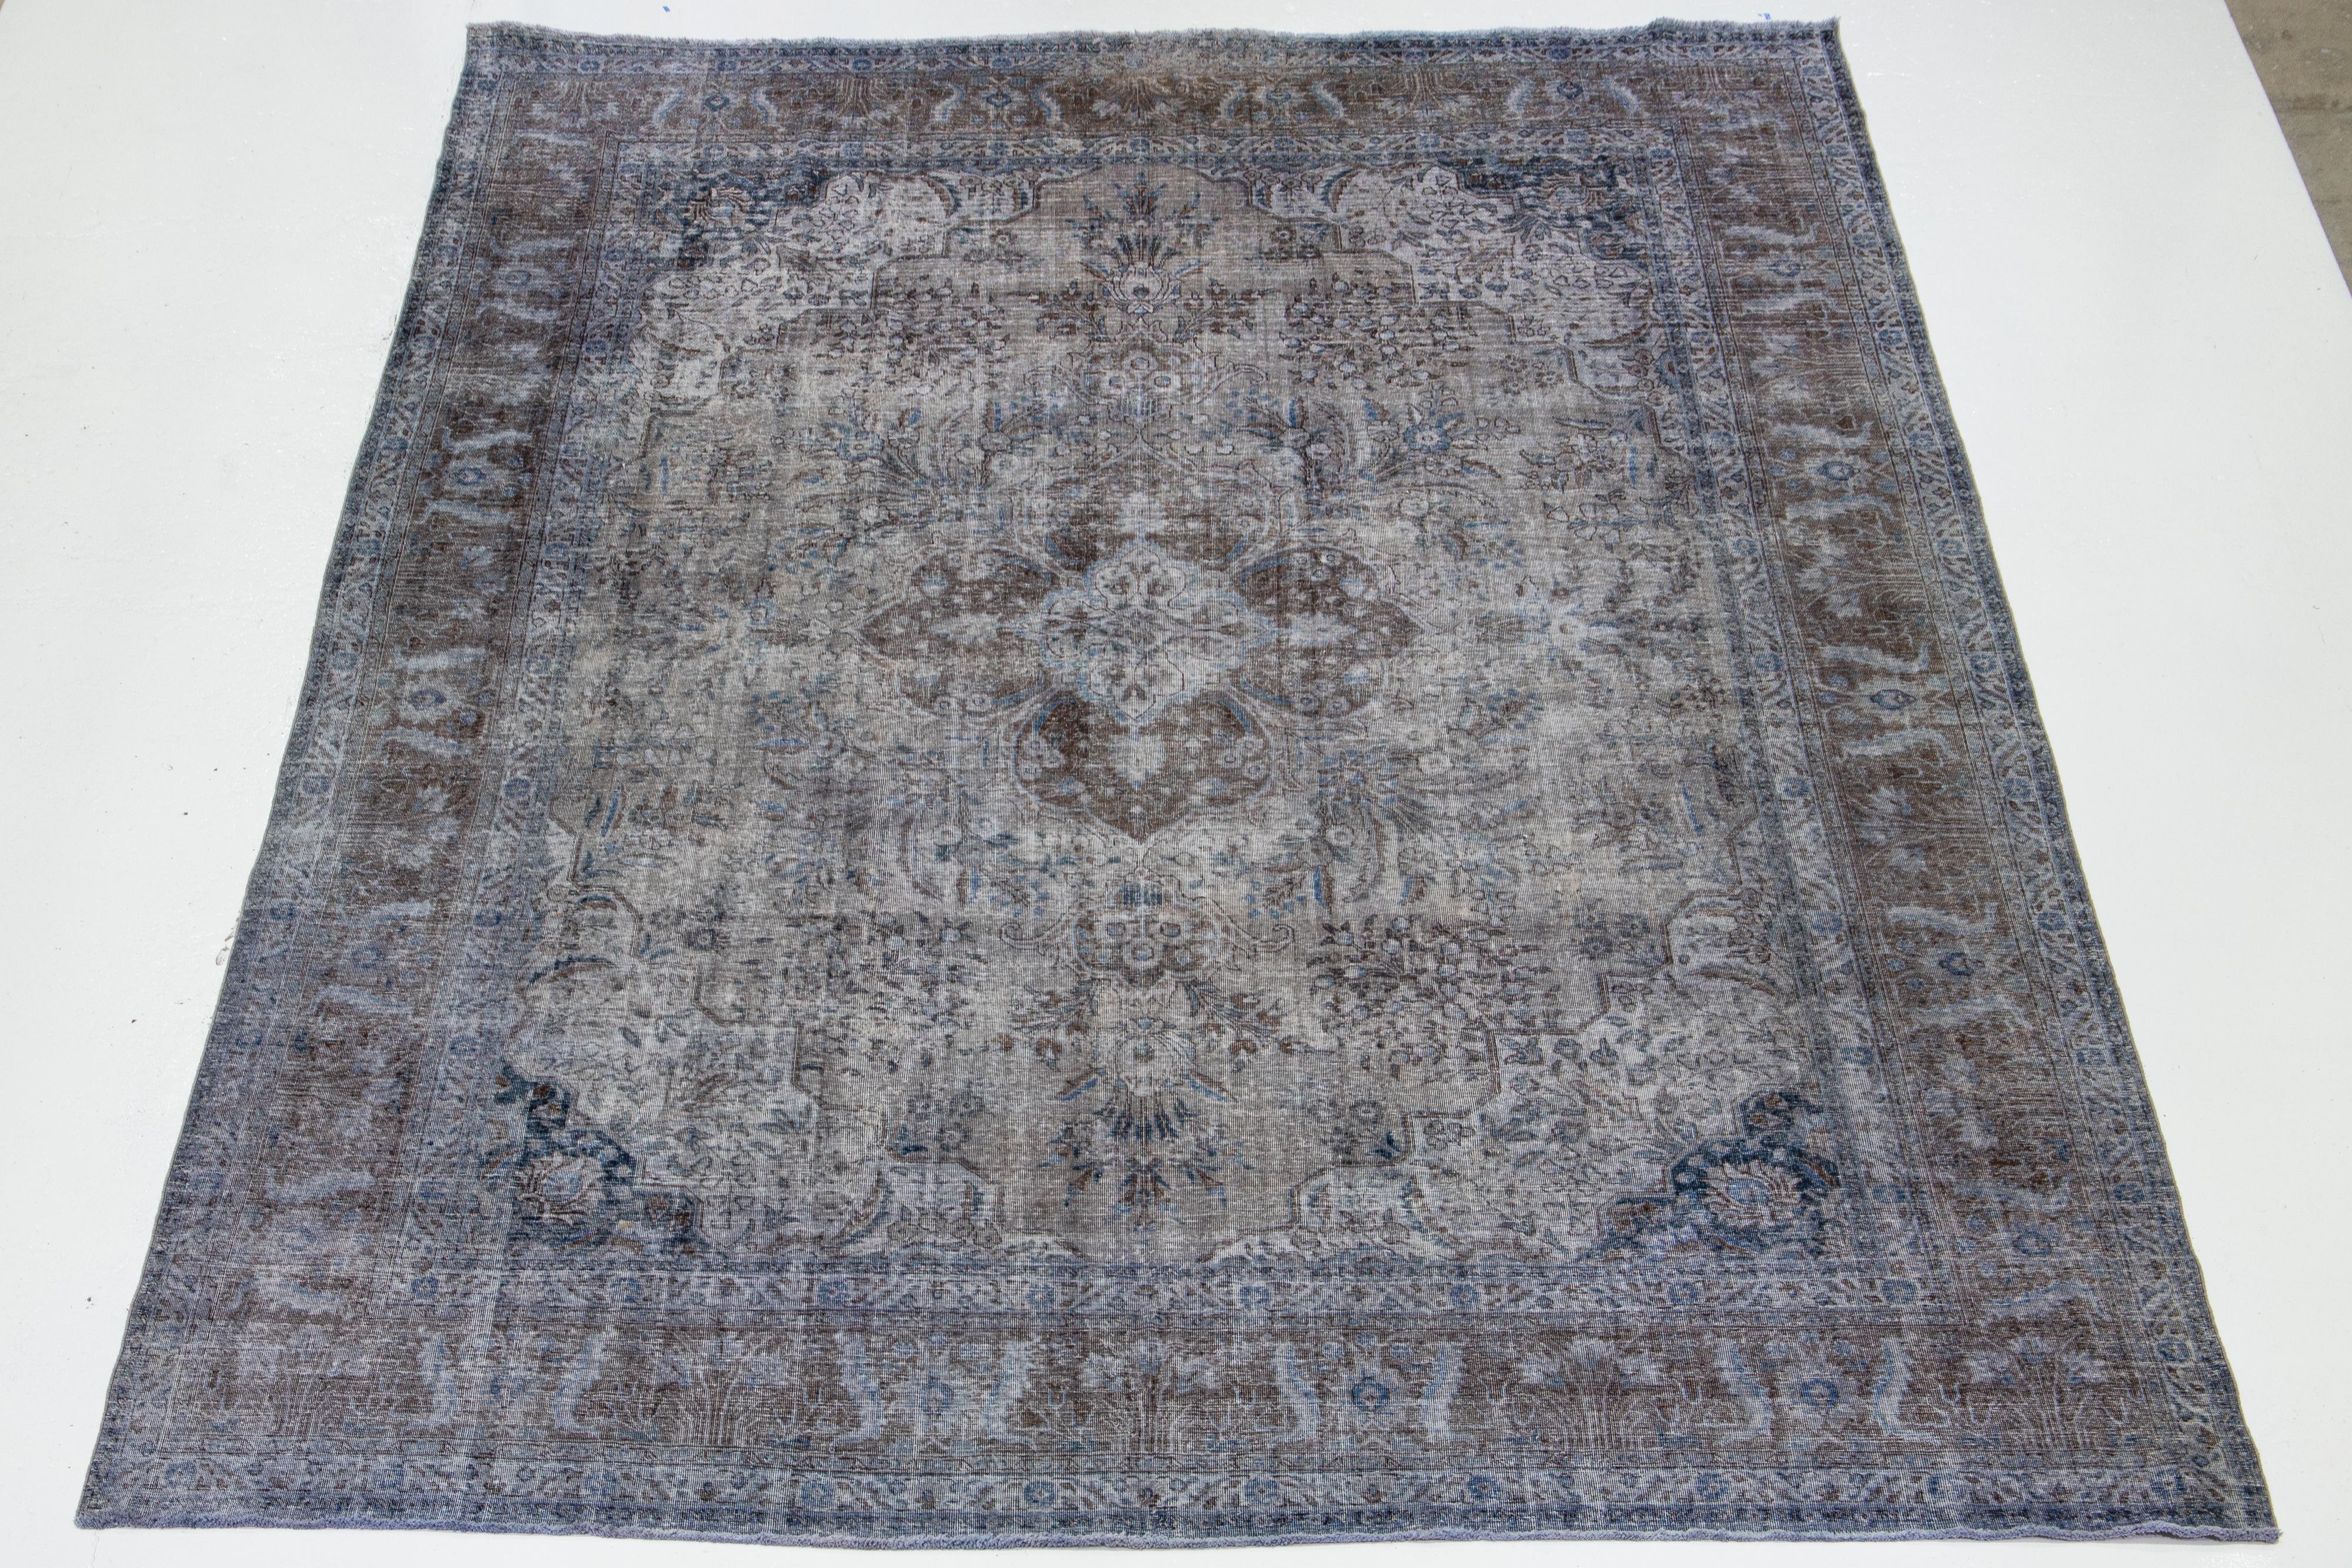 Dies ist ein grauer, antiker, handgeknüpfter Teppich aus persischer Wolle mit einem floralen Allover-Muster mit braunen und blauen Akzenten.

Dieser Teppich misst 11'3'' x 14'11